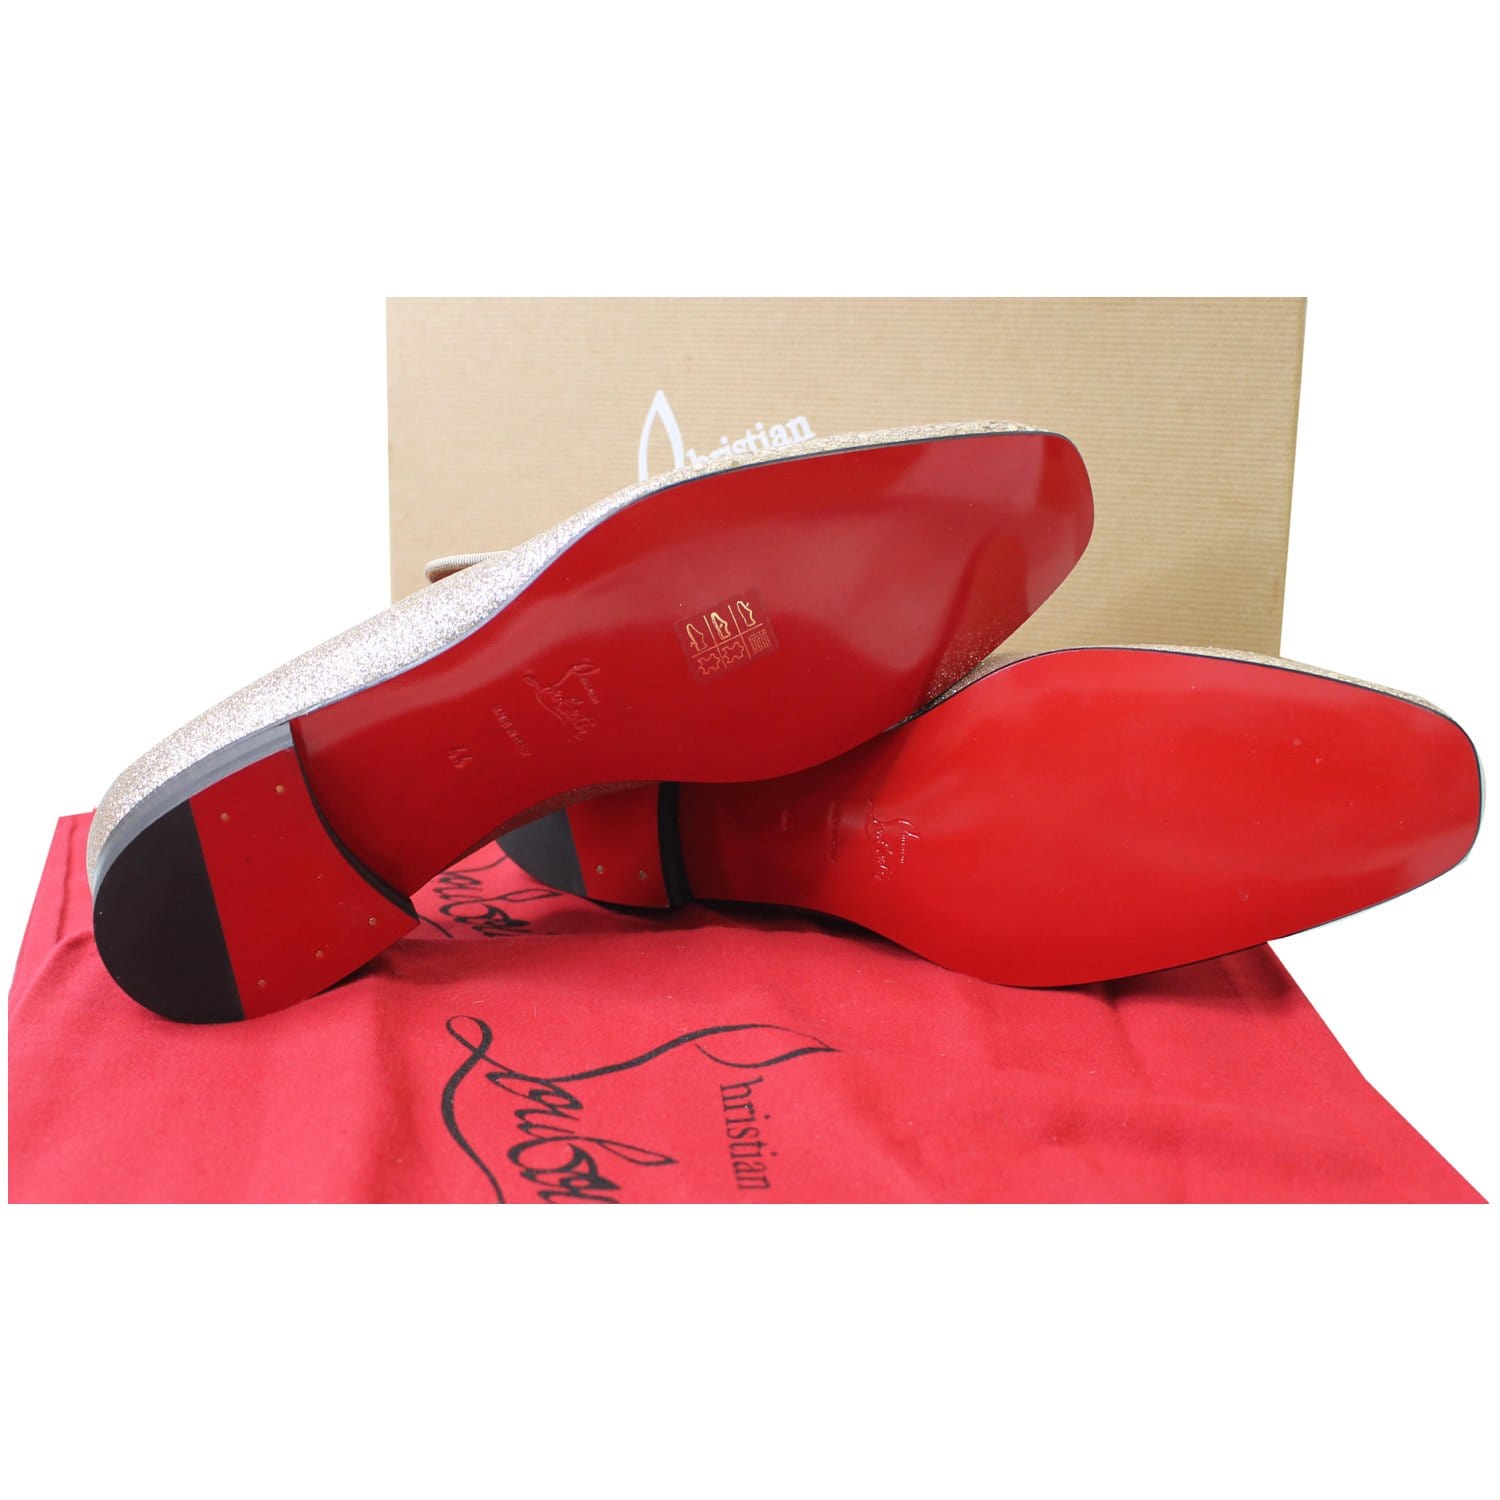 Christian Louboutin Men's Red Sole Strass Velvet Dress Loafers